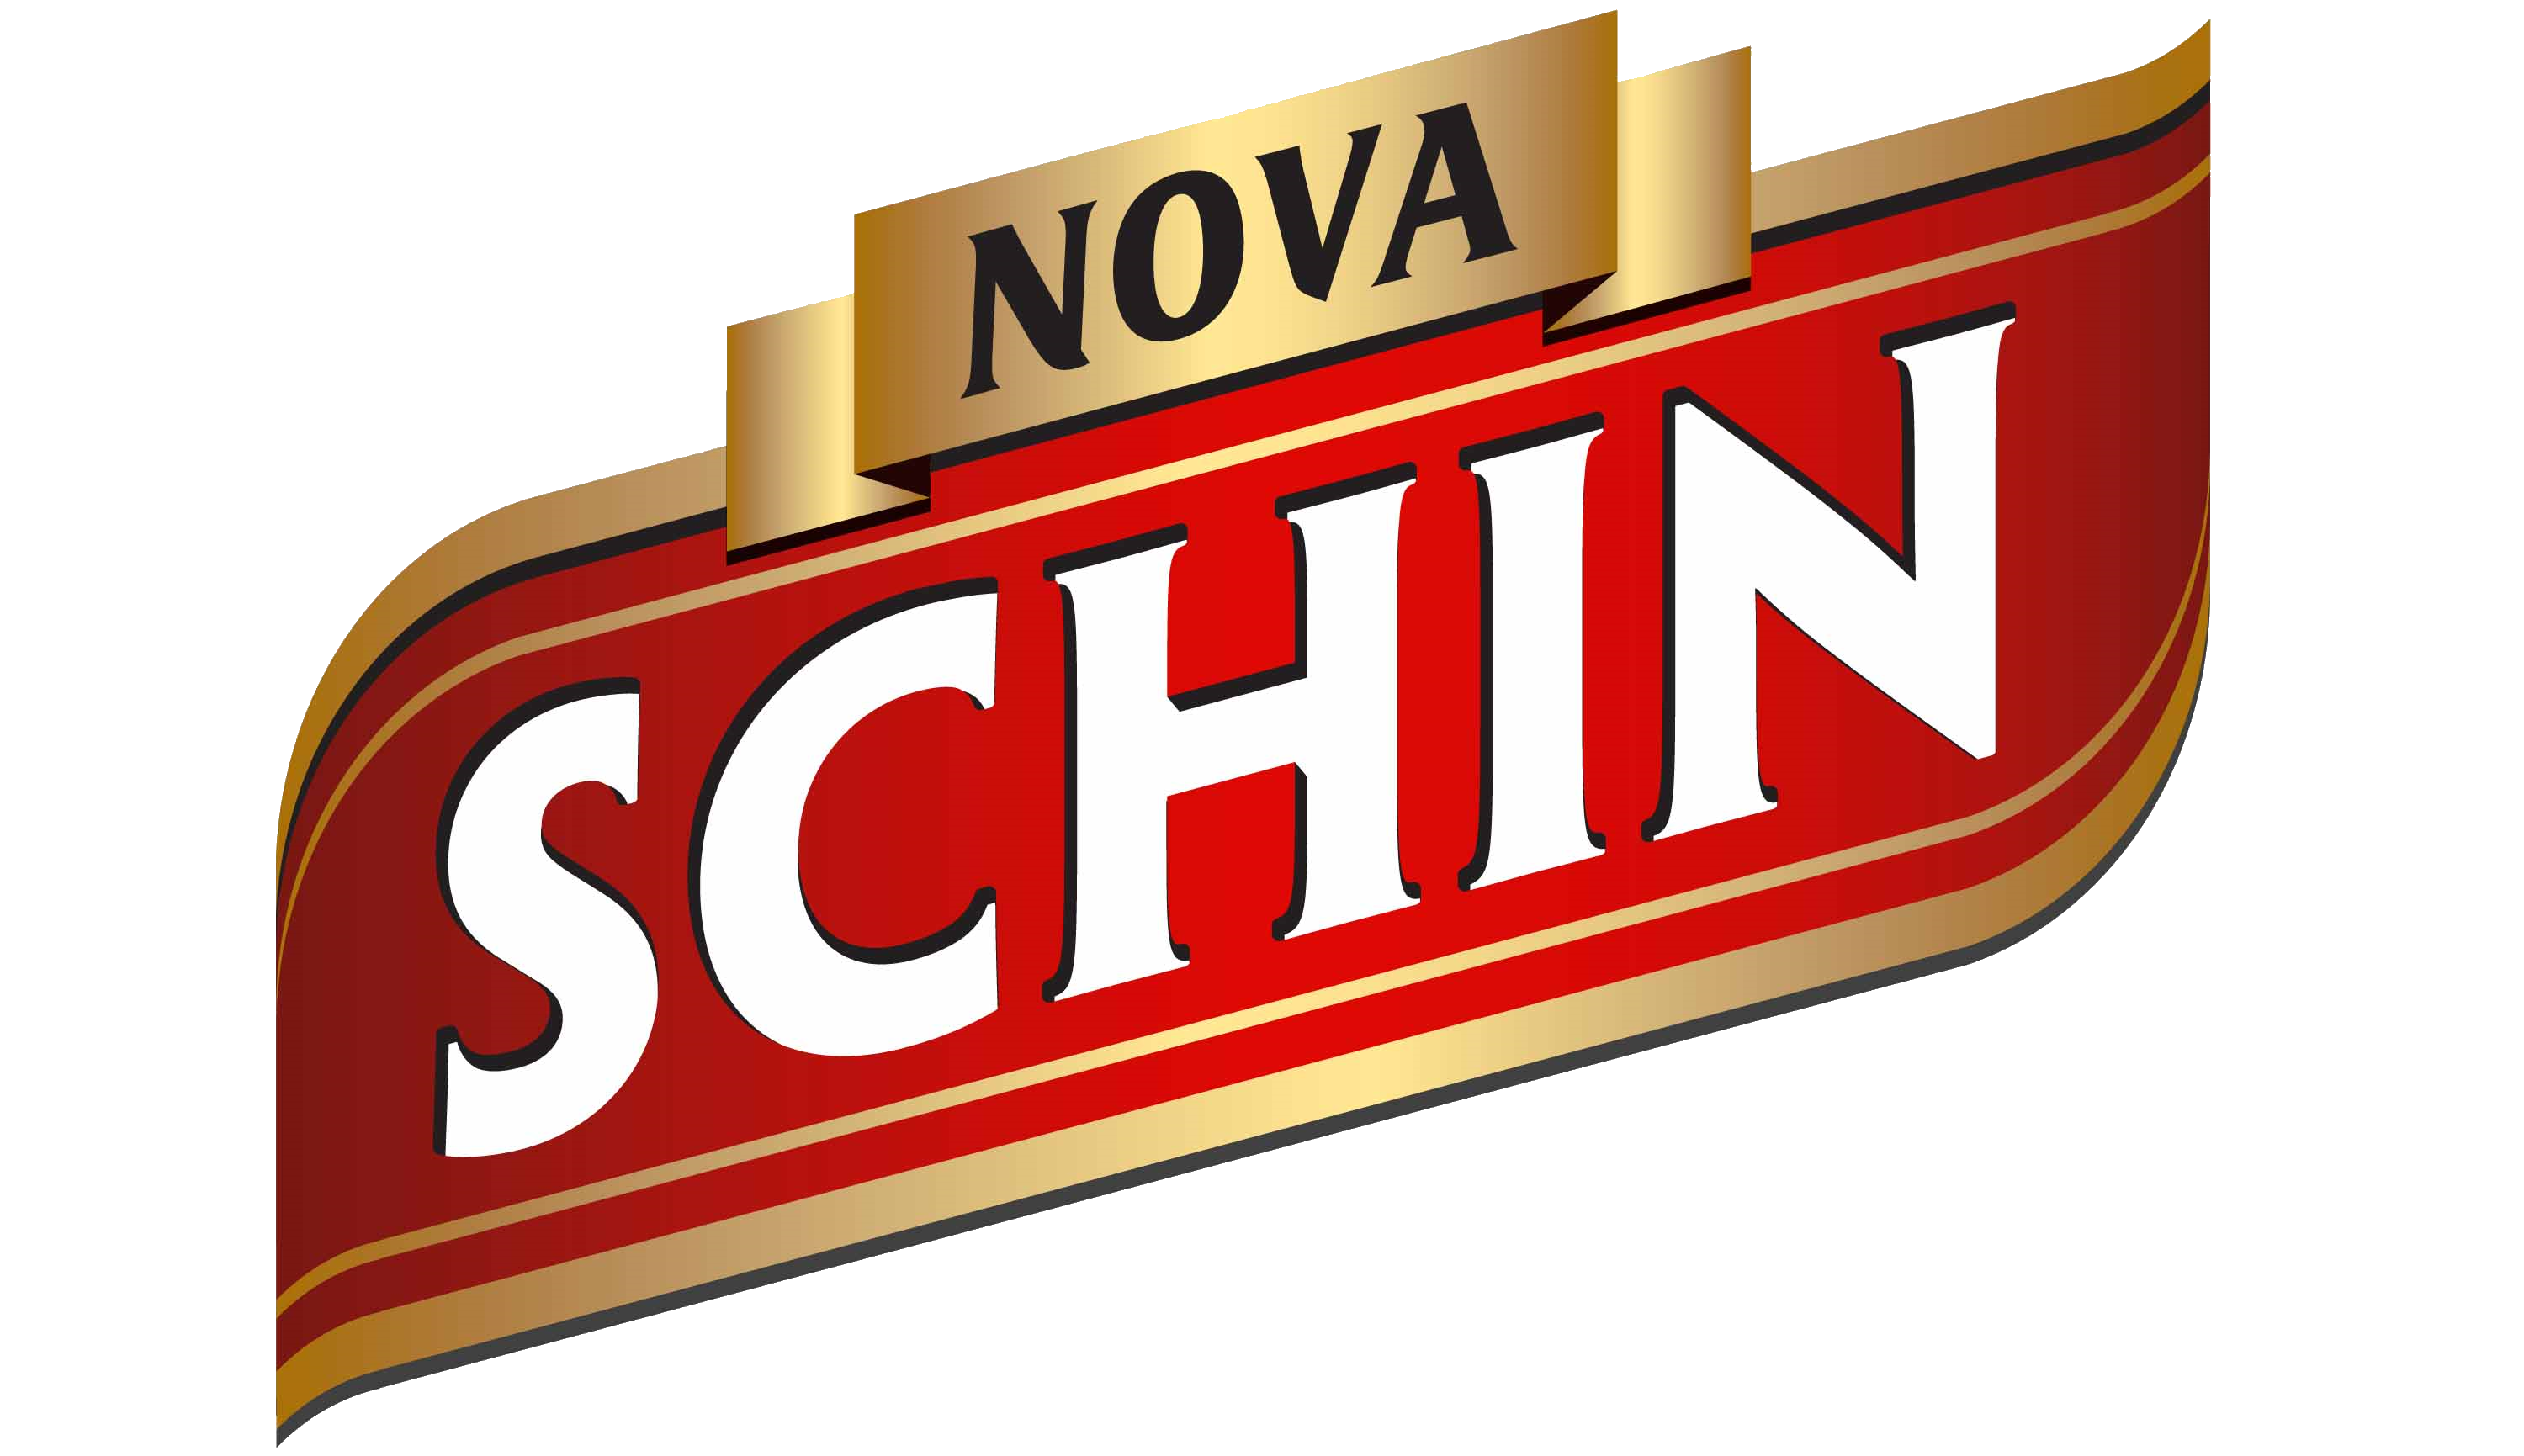 nova schin logo, logotipo nova schin.